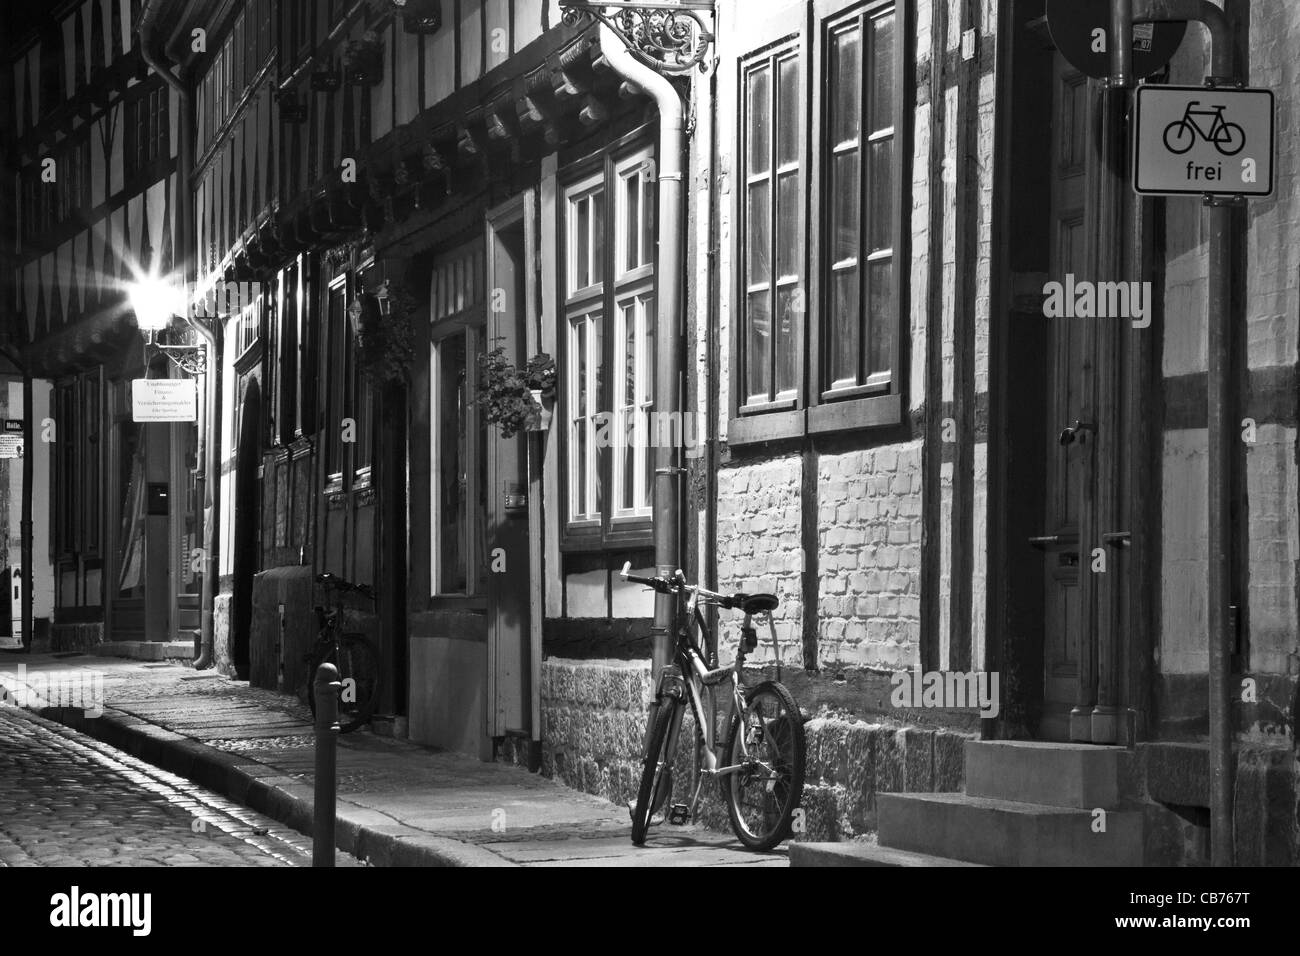 Une étroite rue pavée, des maisons à colombage et un vélo dans la nuit à Quedlinburg, Allemagne. Version couleur disponible : CB77HC Banque D'Images